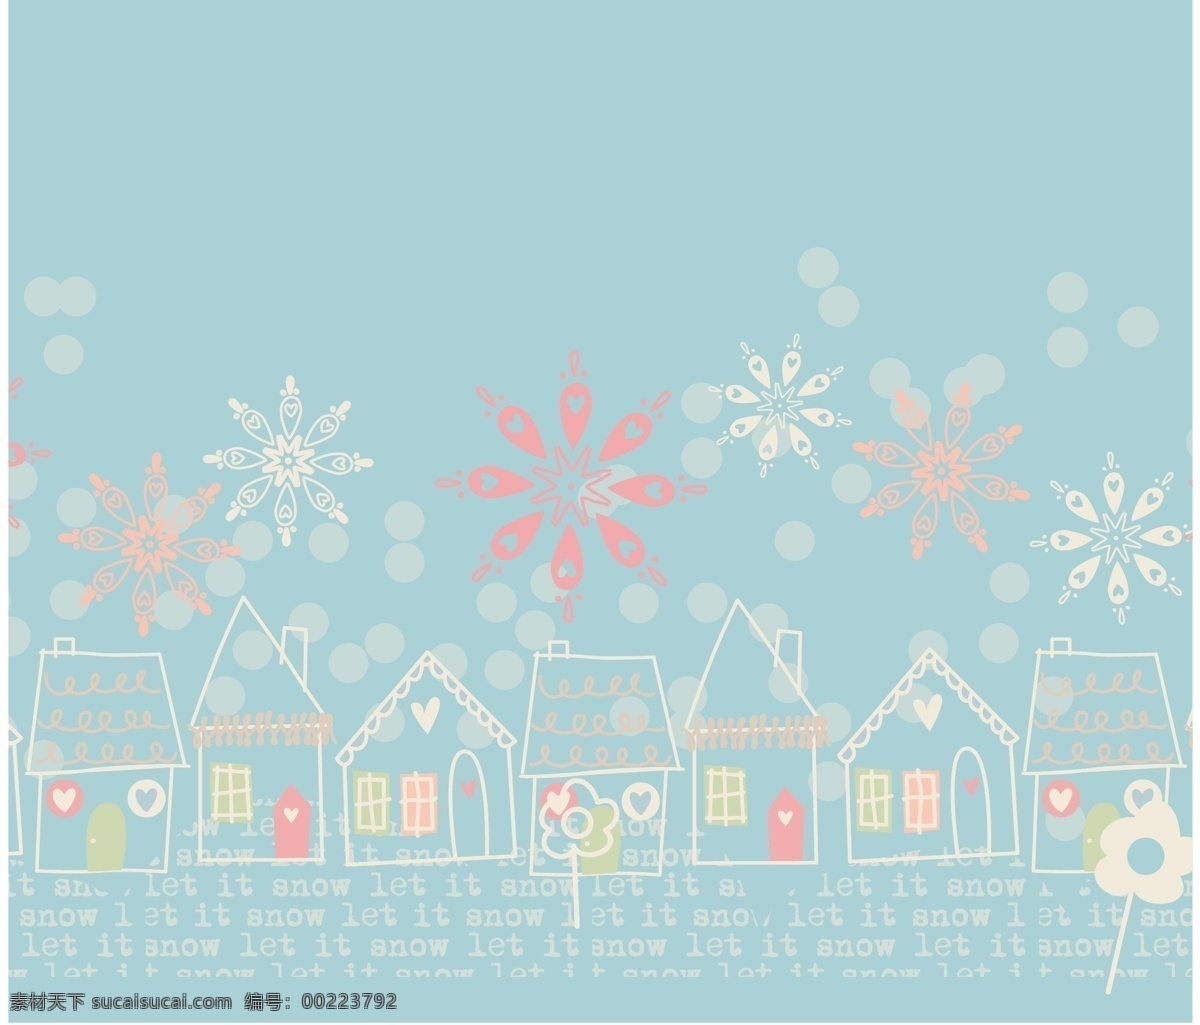 蓝色 线条 可爱 下雪 主题 服装 图案 矢量 鲜花 房屋 黑板 手绘 英文 插画 卡通 水果 蔬菜